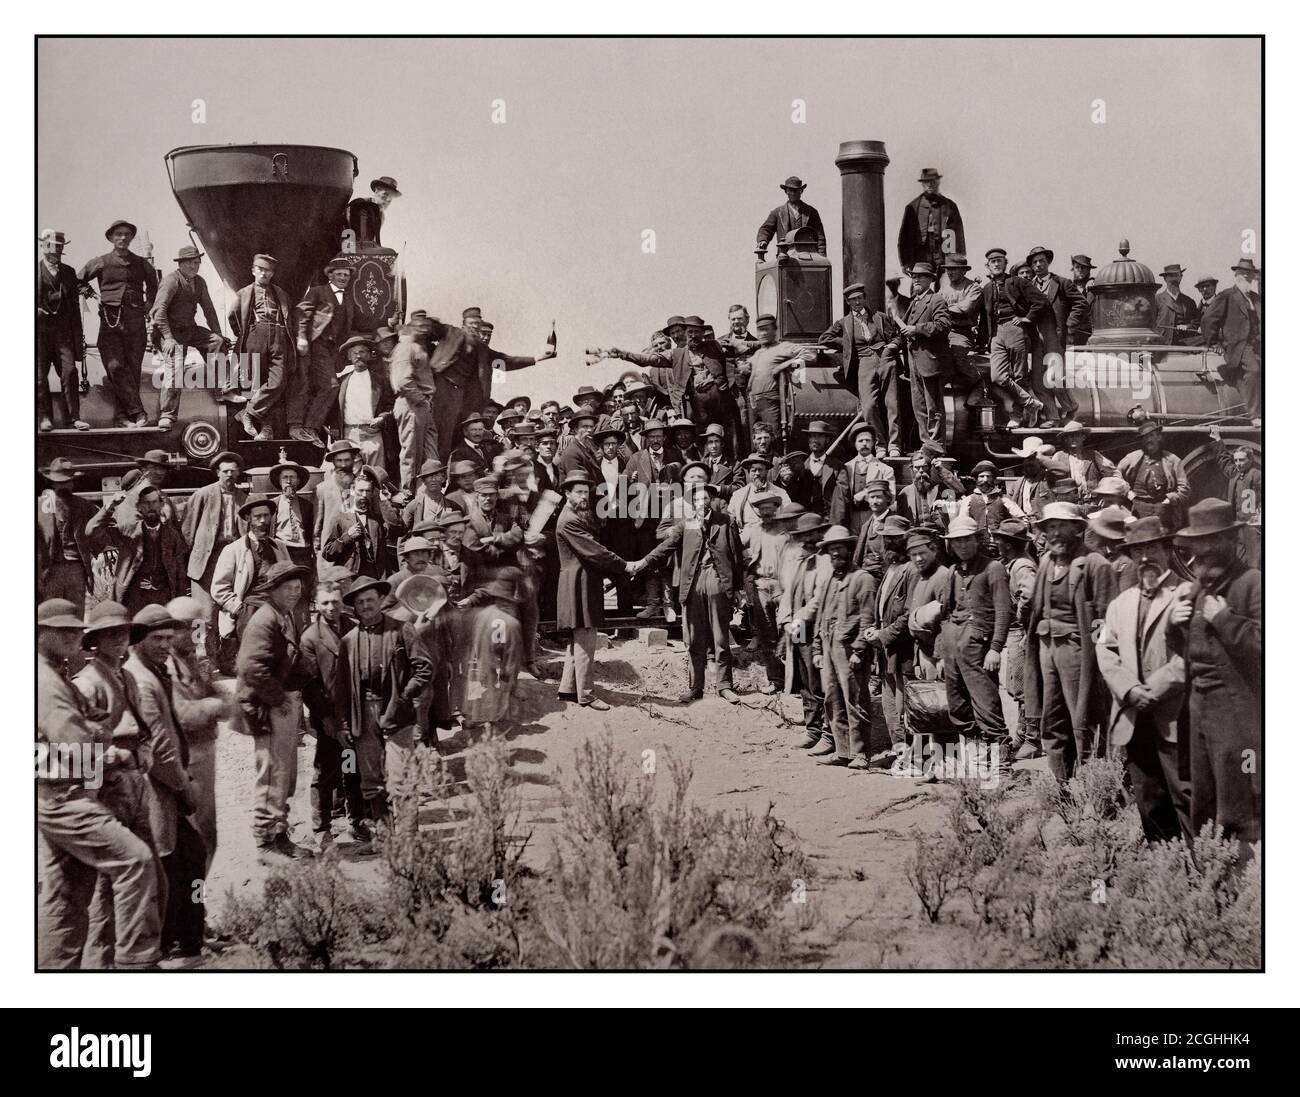 Historische amerikanische Eisenbahn des Jahrgangs 1860 Ost und West beim  historischen Moment der endgültigen Verlegung der letzten Schiene zur  Verbindung mit der Union Pacific Railroad von Ost nach West- Amerika USA die